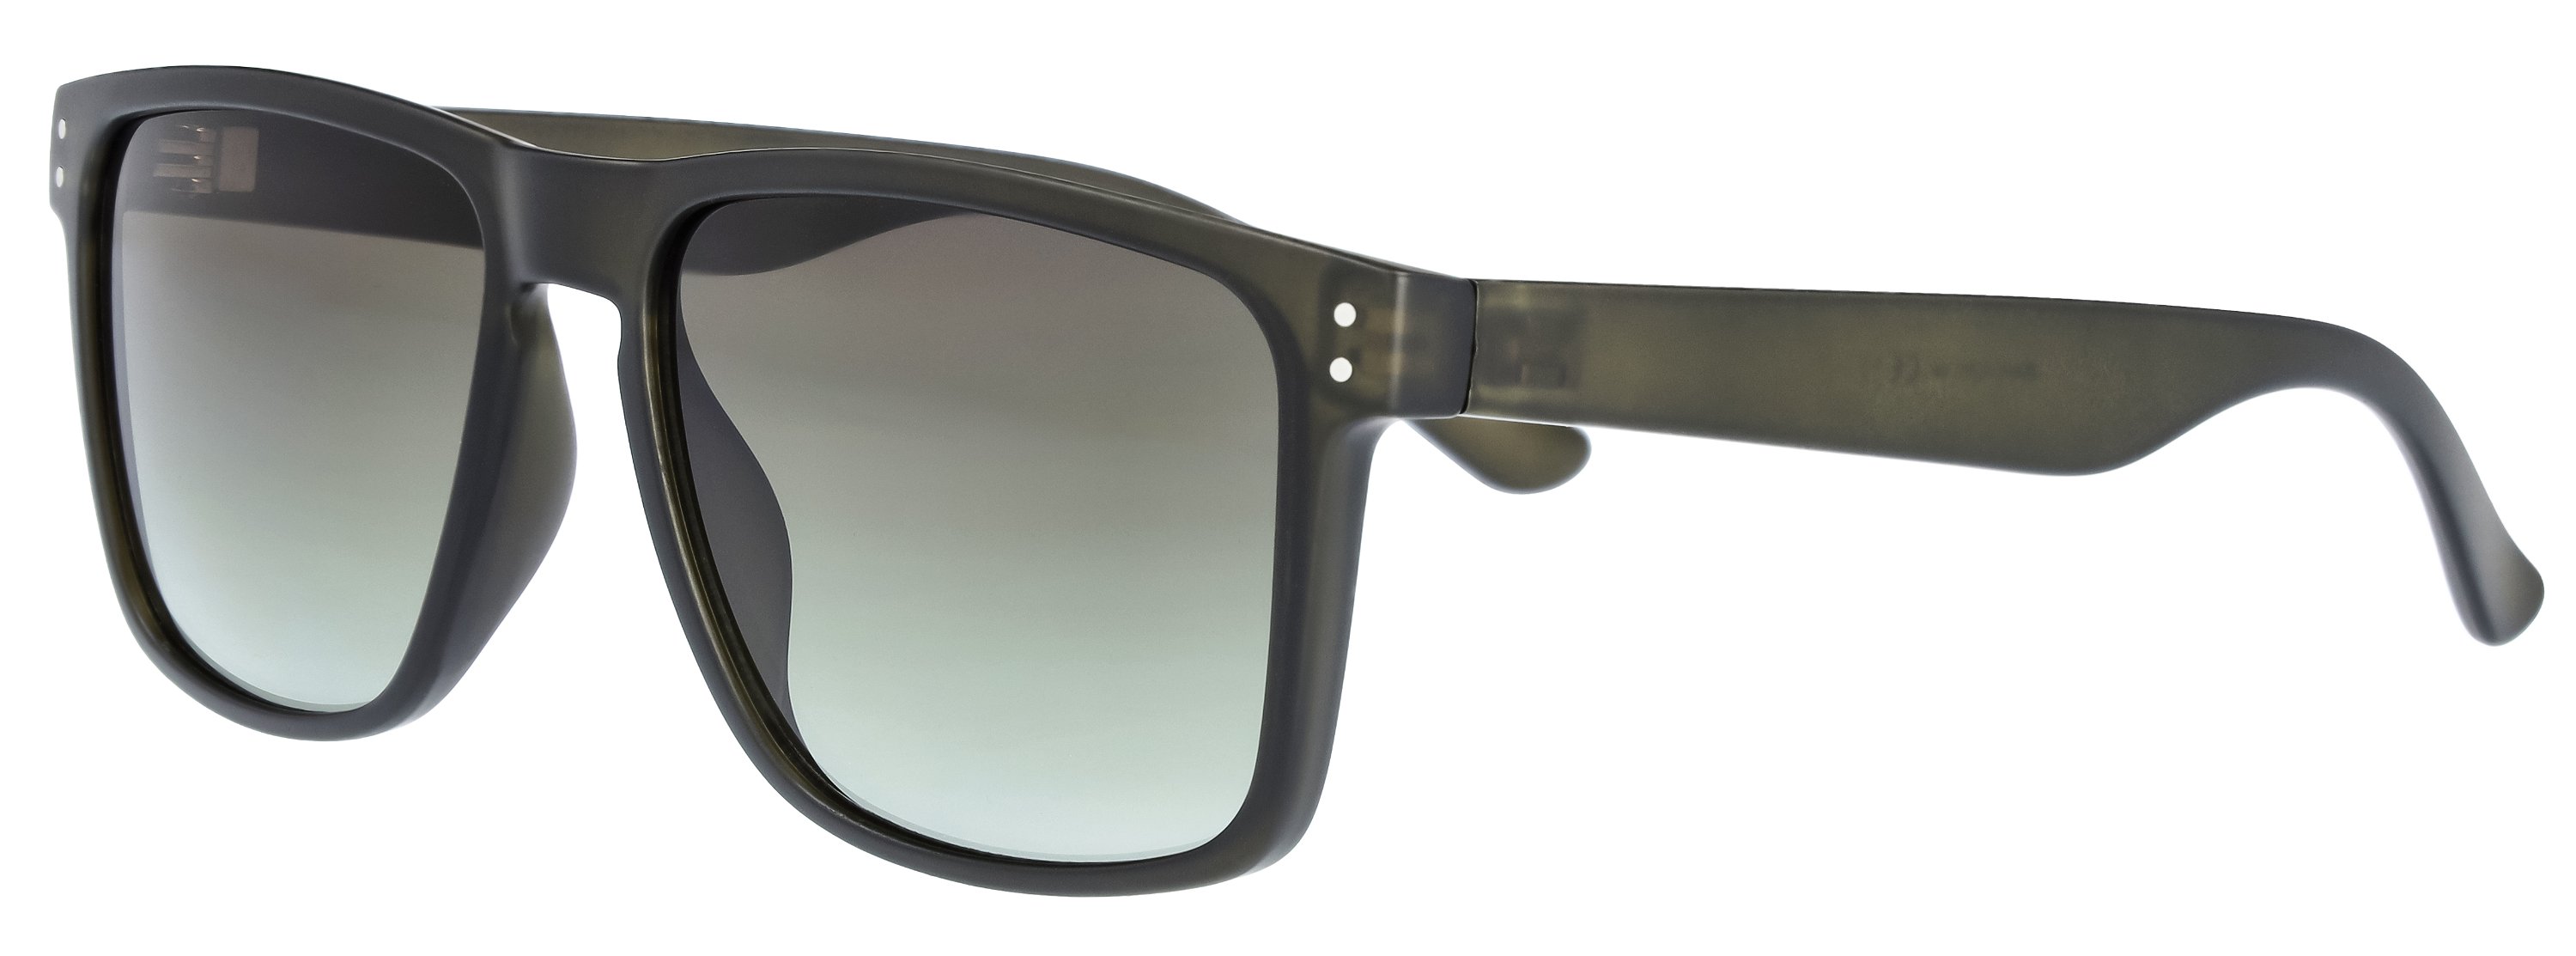 Das Bild zeigt die Sonnenbrille 721152 von der Marke Abele Optik in schwarz.